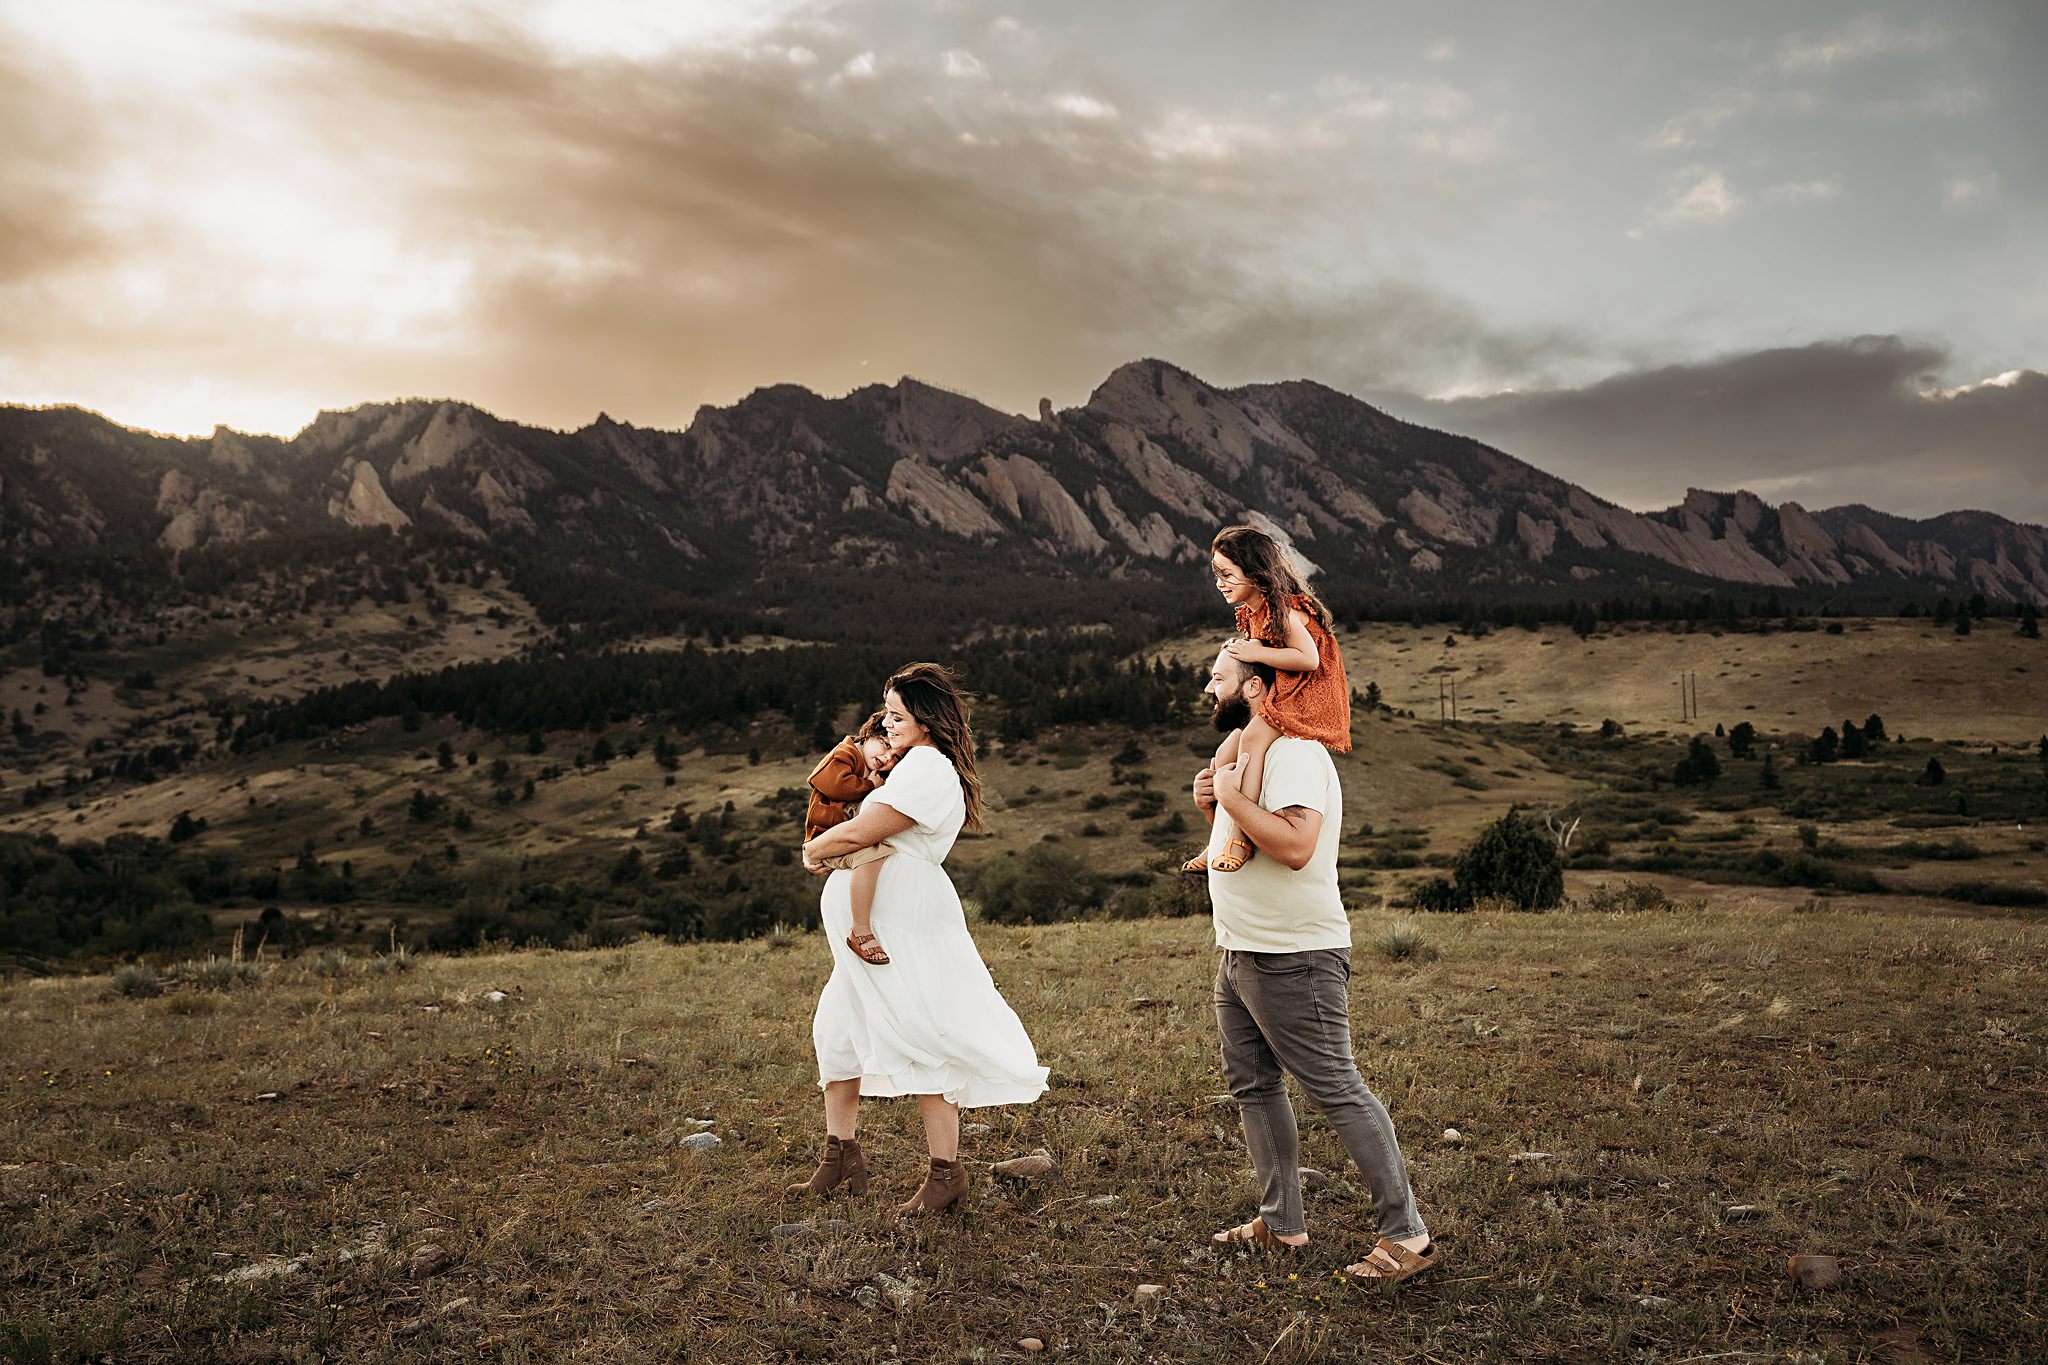 Alex Morris Design family photographer denver colorado boulder mountains